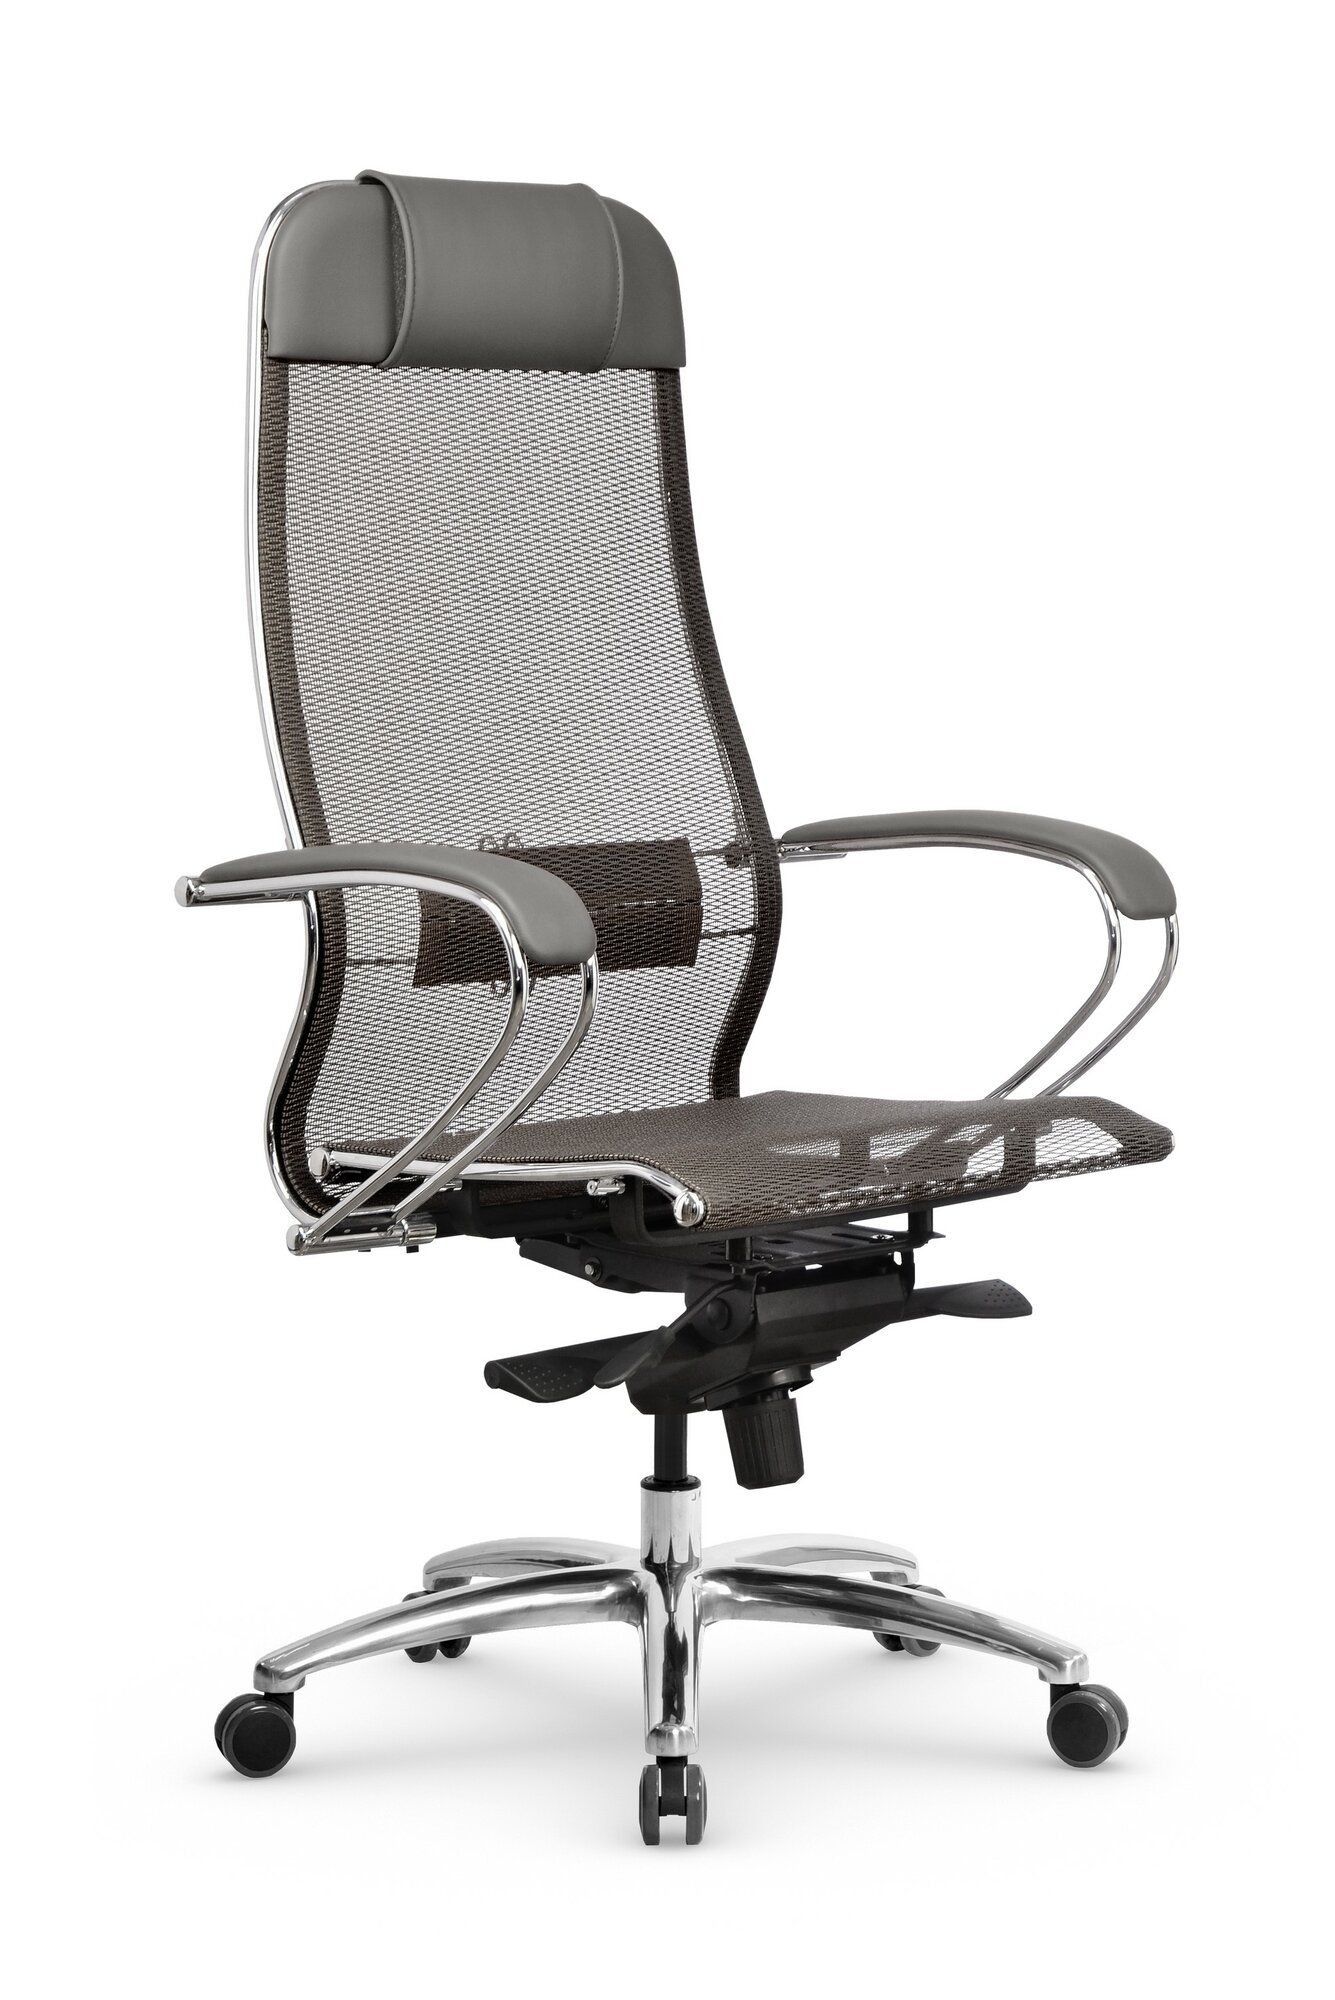 Кресло Samurai S-1.04 MPES, кресло Метта с механизмом качания, кресло компьютерное, кресло офисное, кресло самурай, кресло для дома и офиса